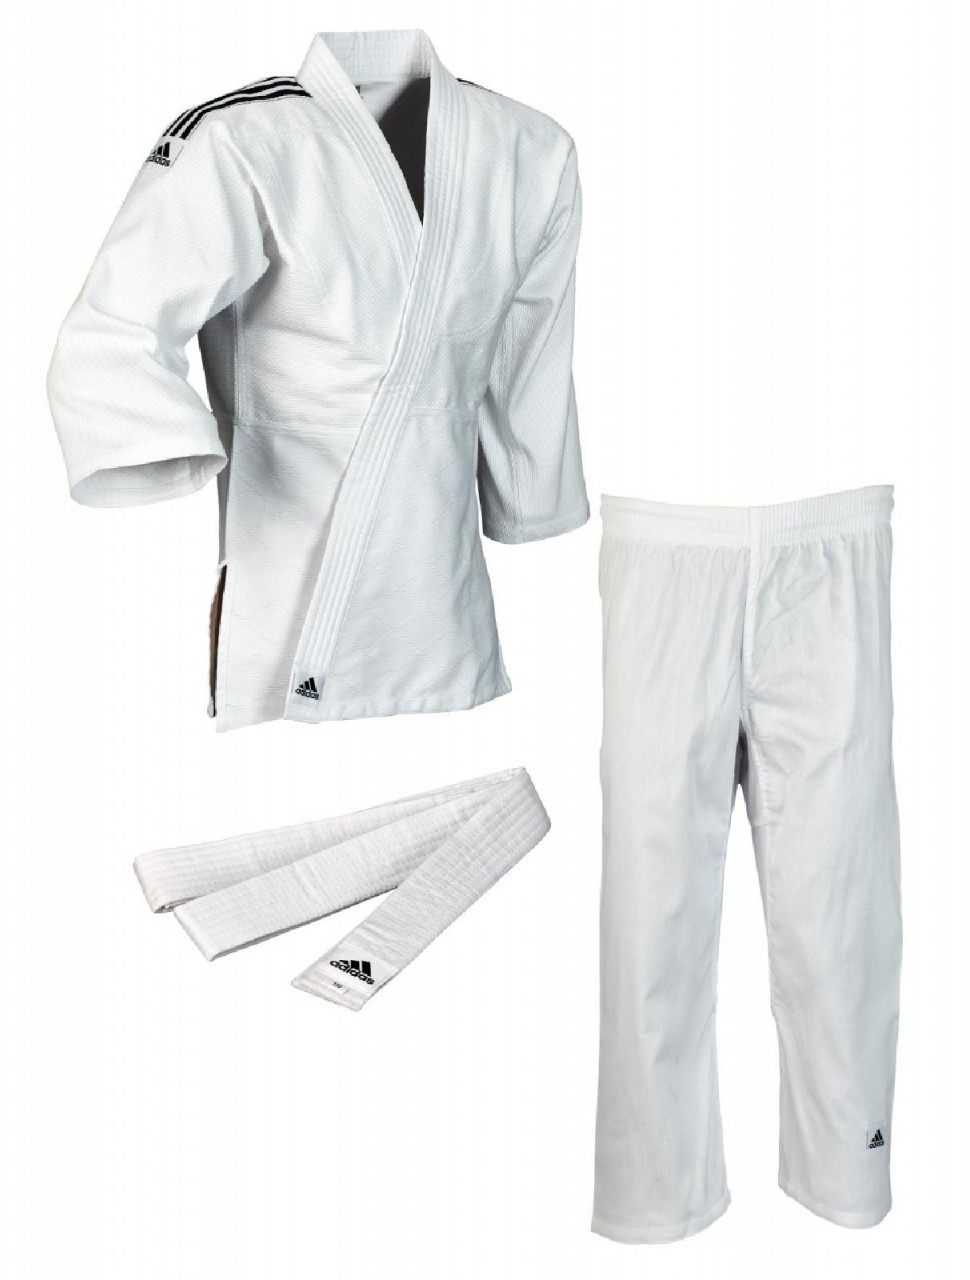 ADIDAS Judo-Anzug Club weiß/schwarze Streifen, J350 von ADIDAS